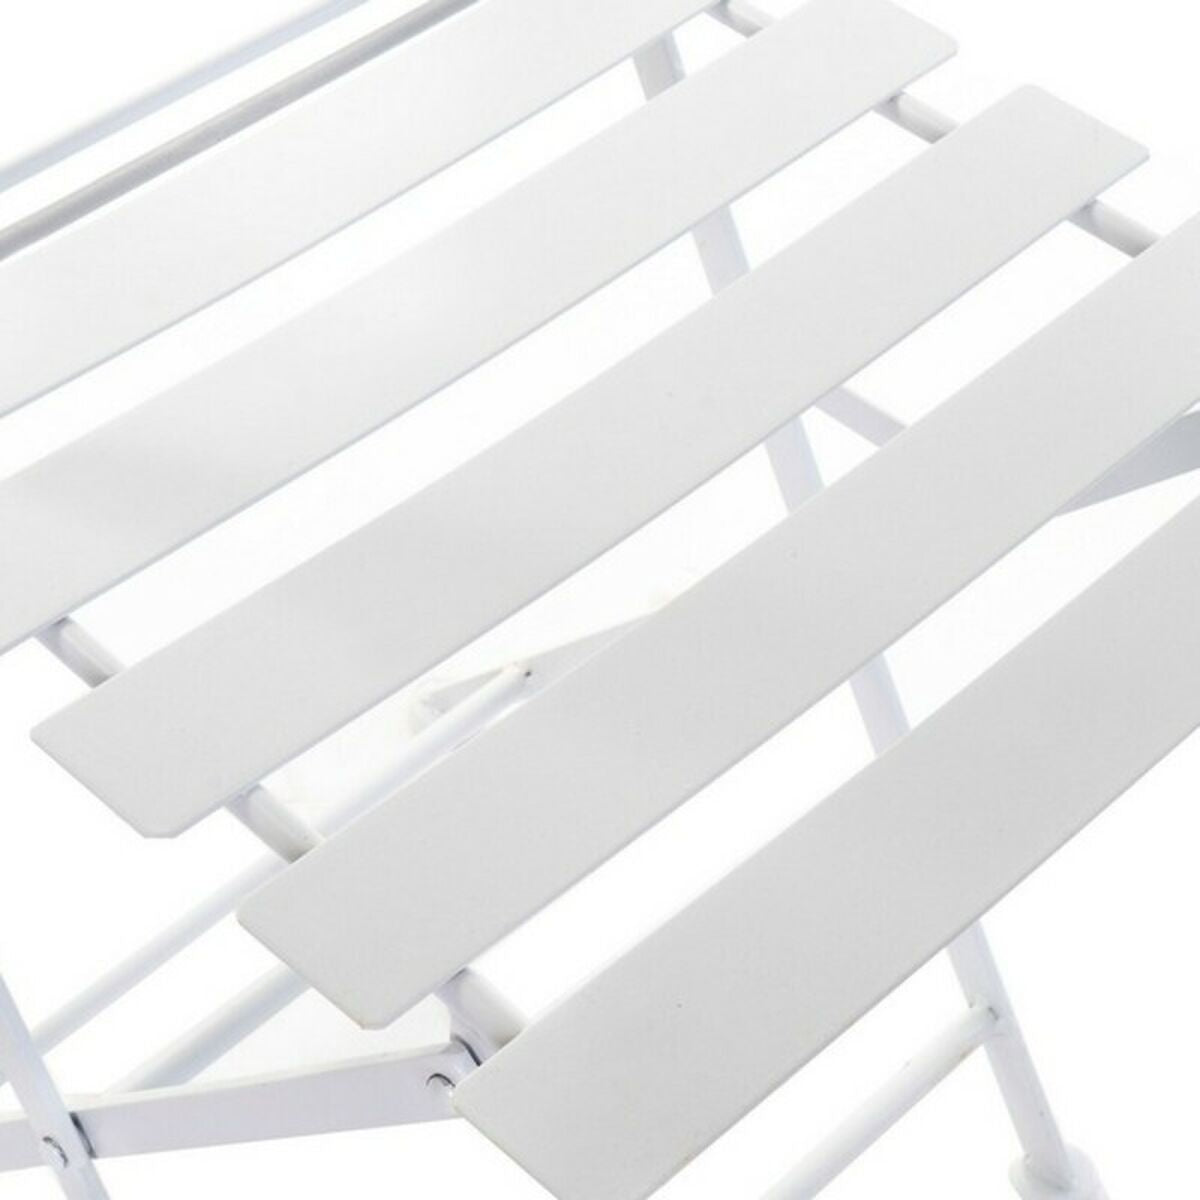 Ensemble de table avec 2 chaises DKD décoration intérieure blanche 80 cm 60 x 60 x 70 cm (3